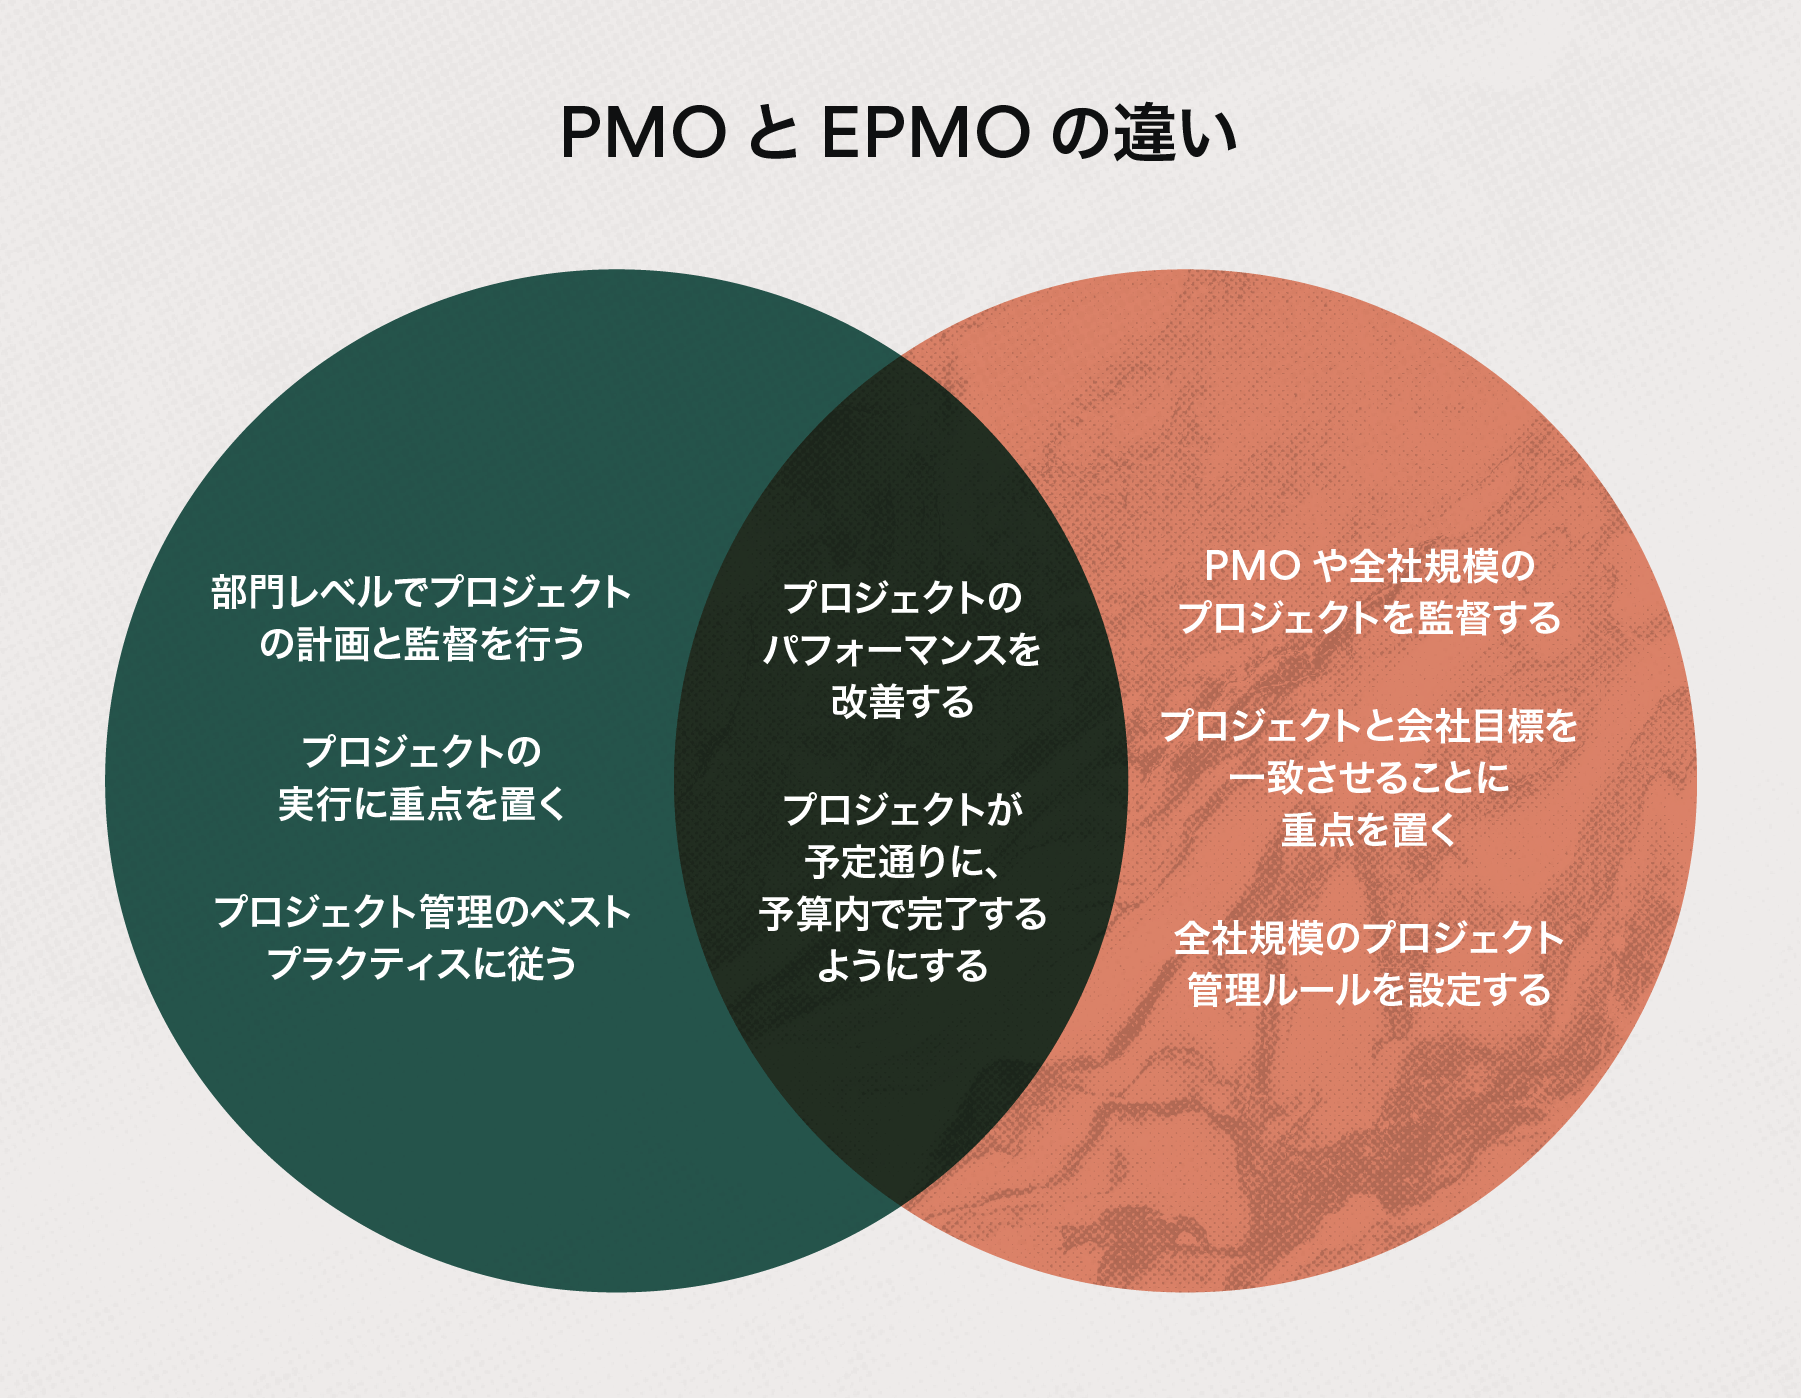 EPMO と PMO の違い